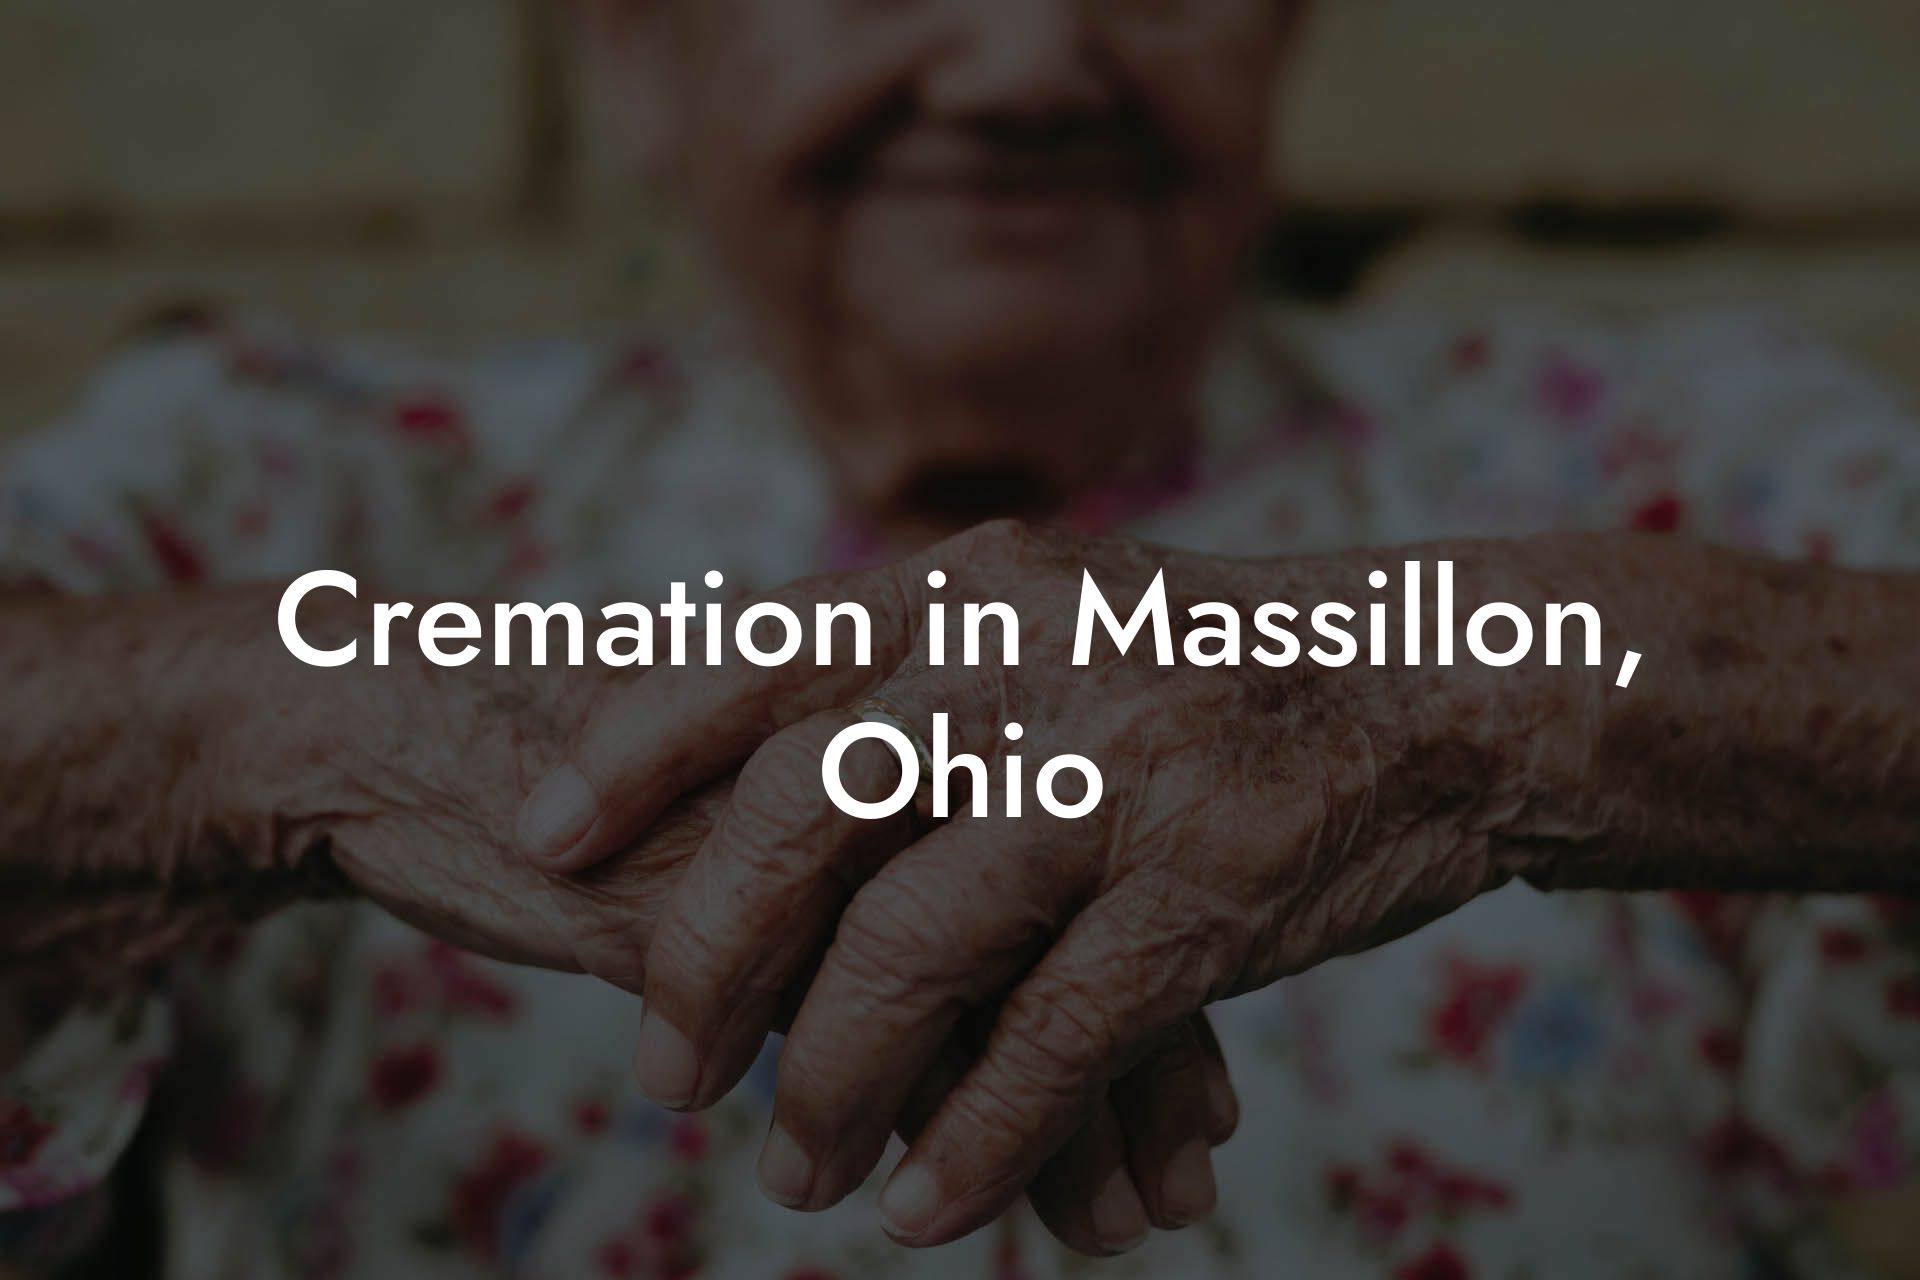 Cremation in Massillon, Ohio